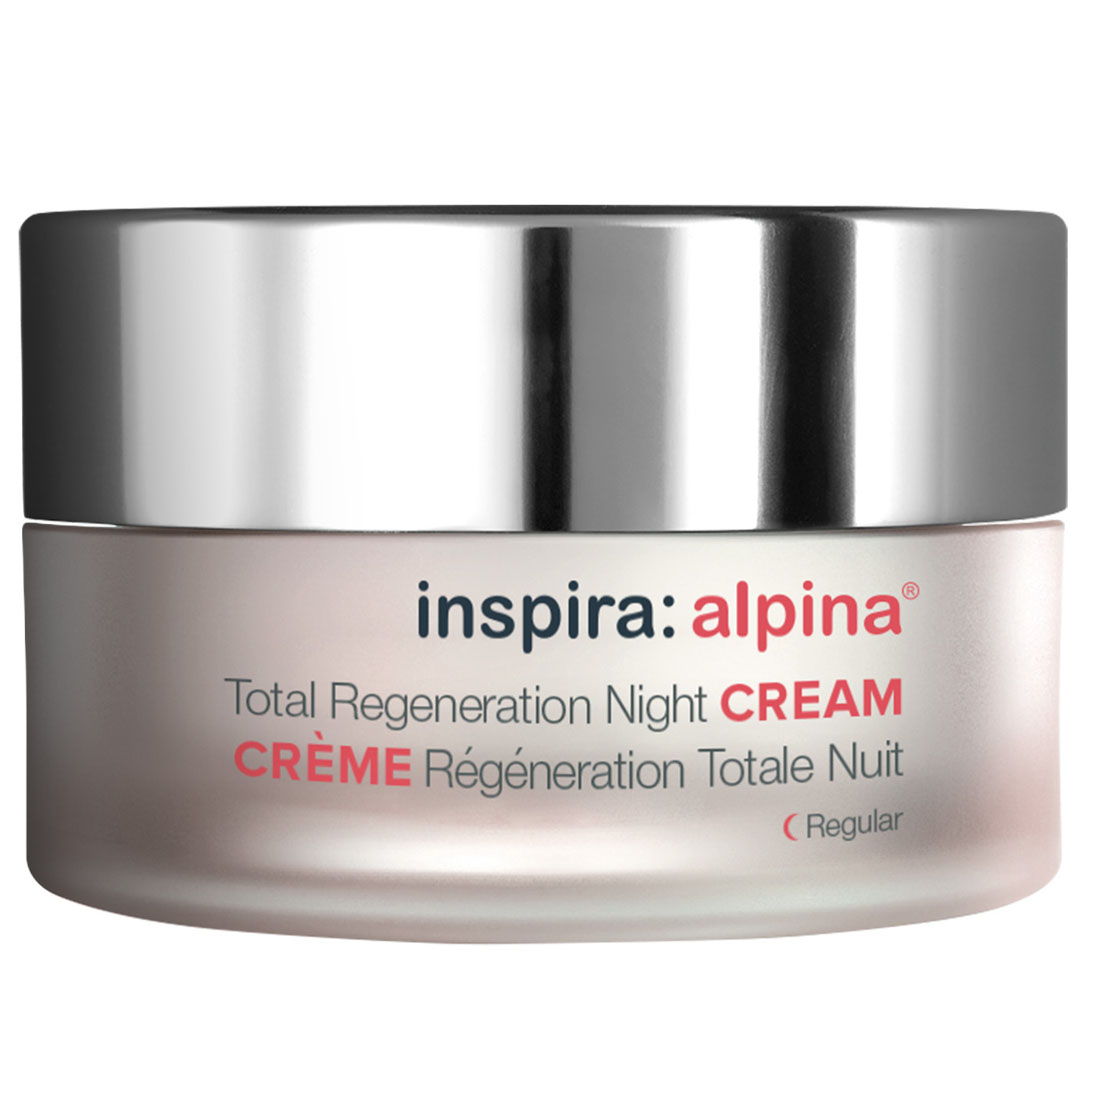 Inspira Cosmetics Легкий ночной регенерирующий лифтинг-крем Total Regeneration Night Cream Regular, 50 мл (Inspira Cosmetics, Alpina)